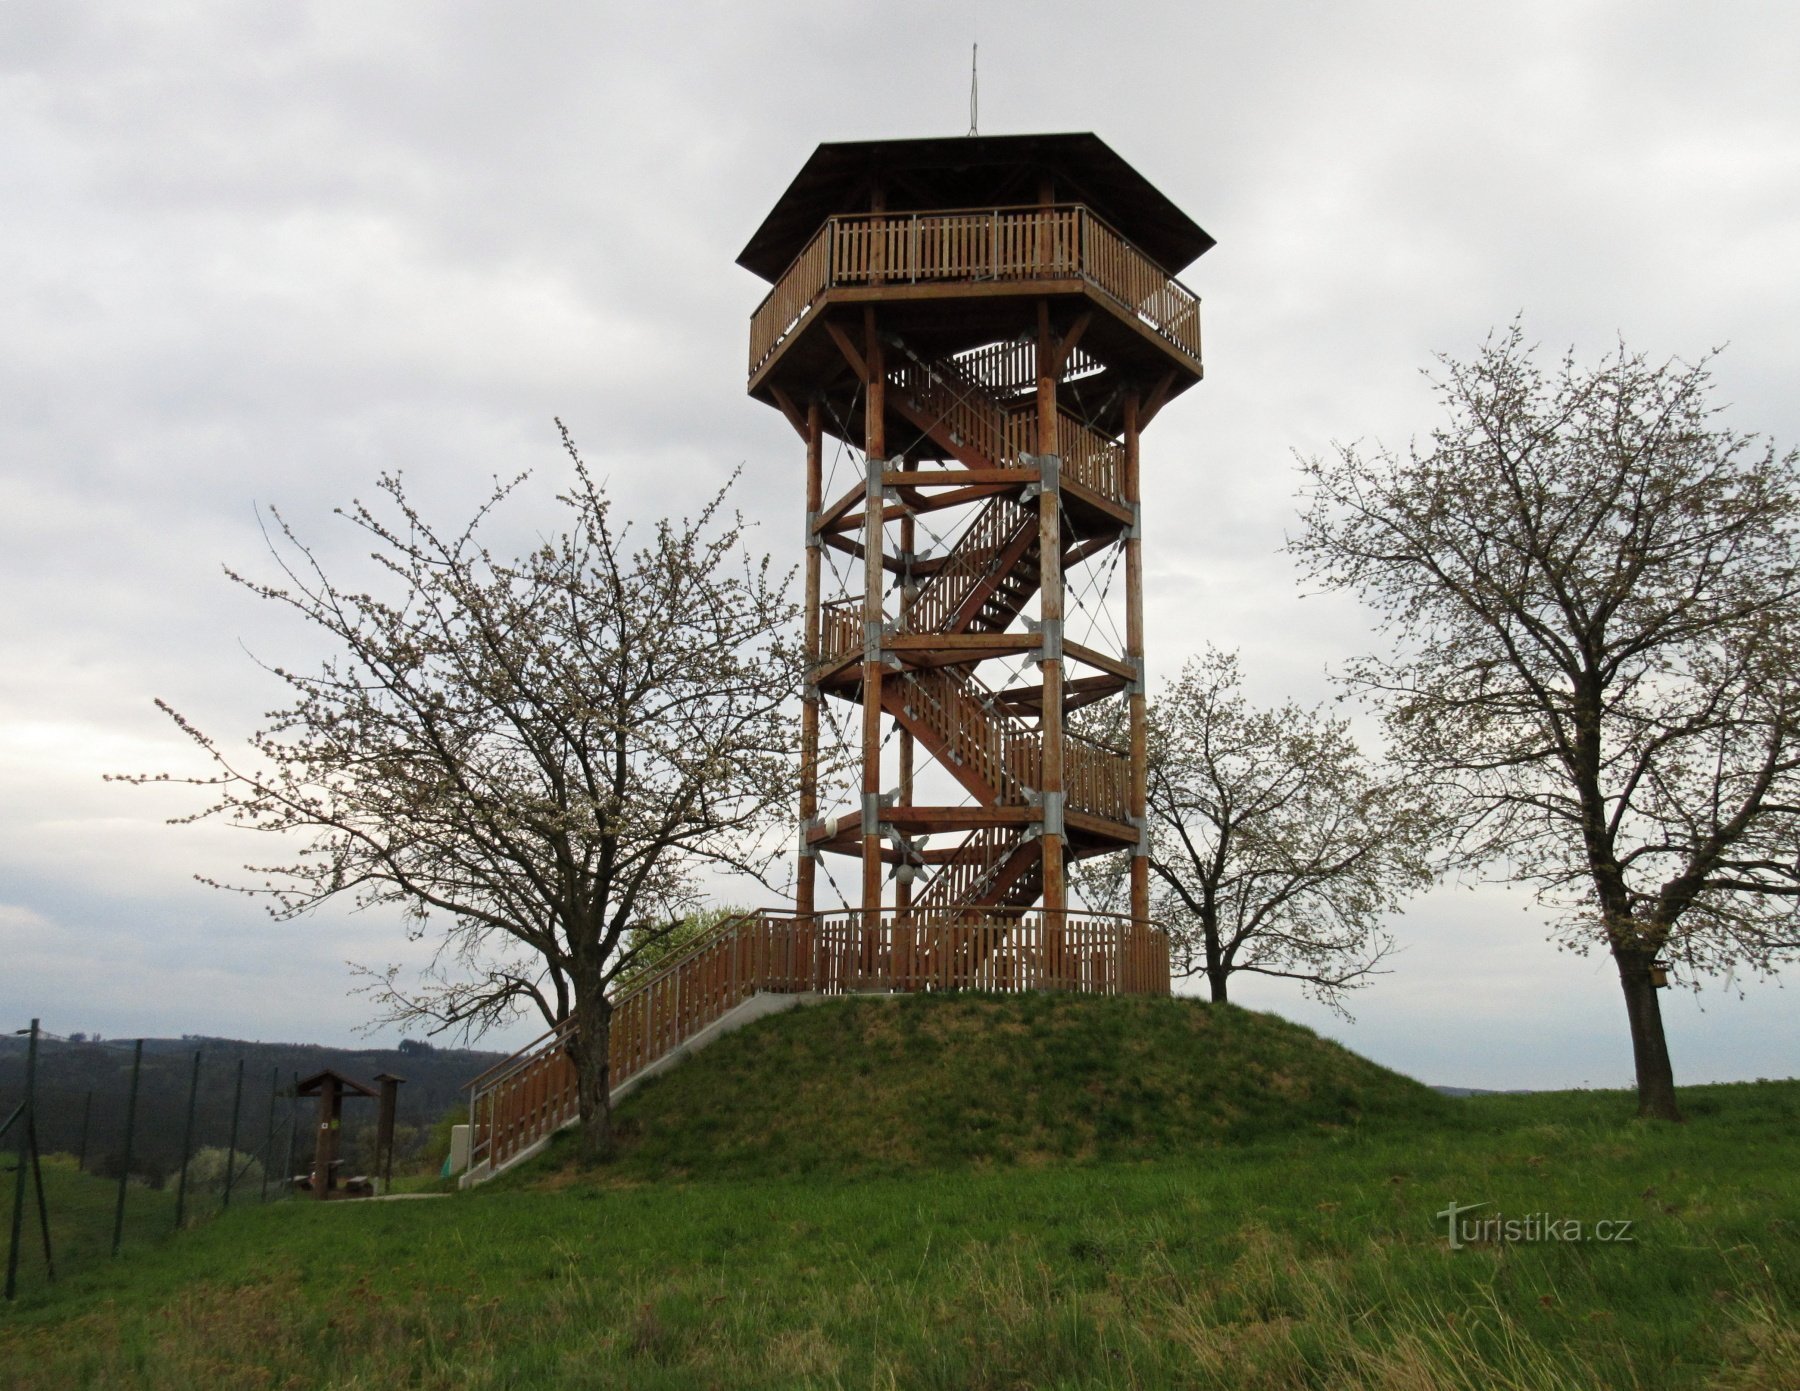 Žernovník - village and lookout tower